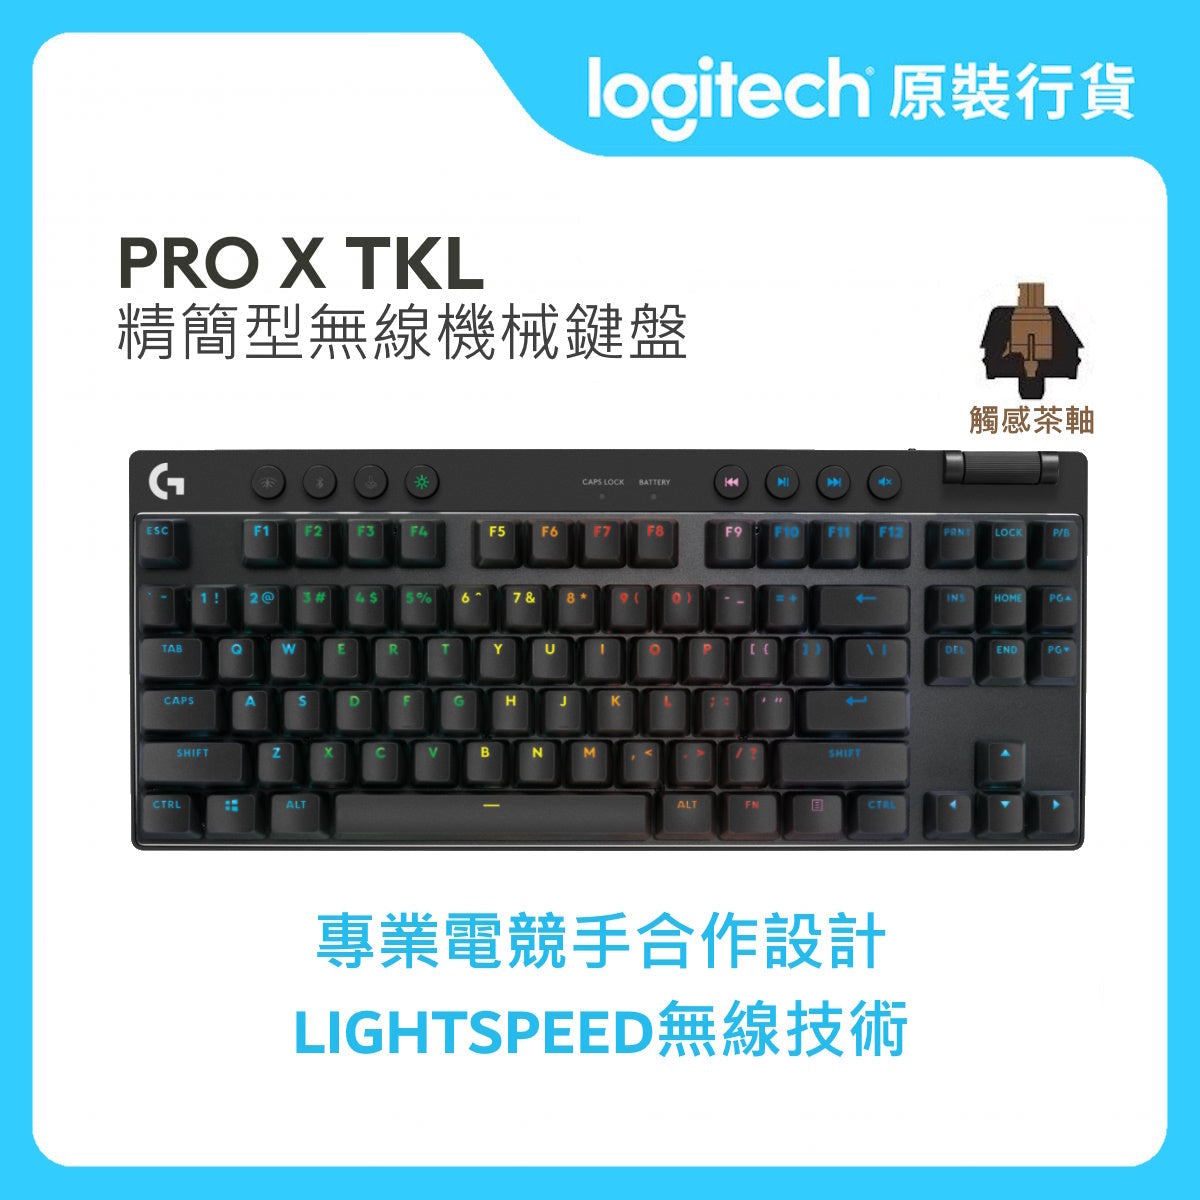 PRO 系列 - PRO X TKL LIGHTSPEED 遊戲鍵盤